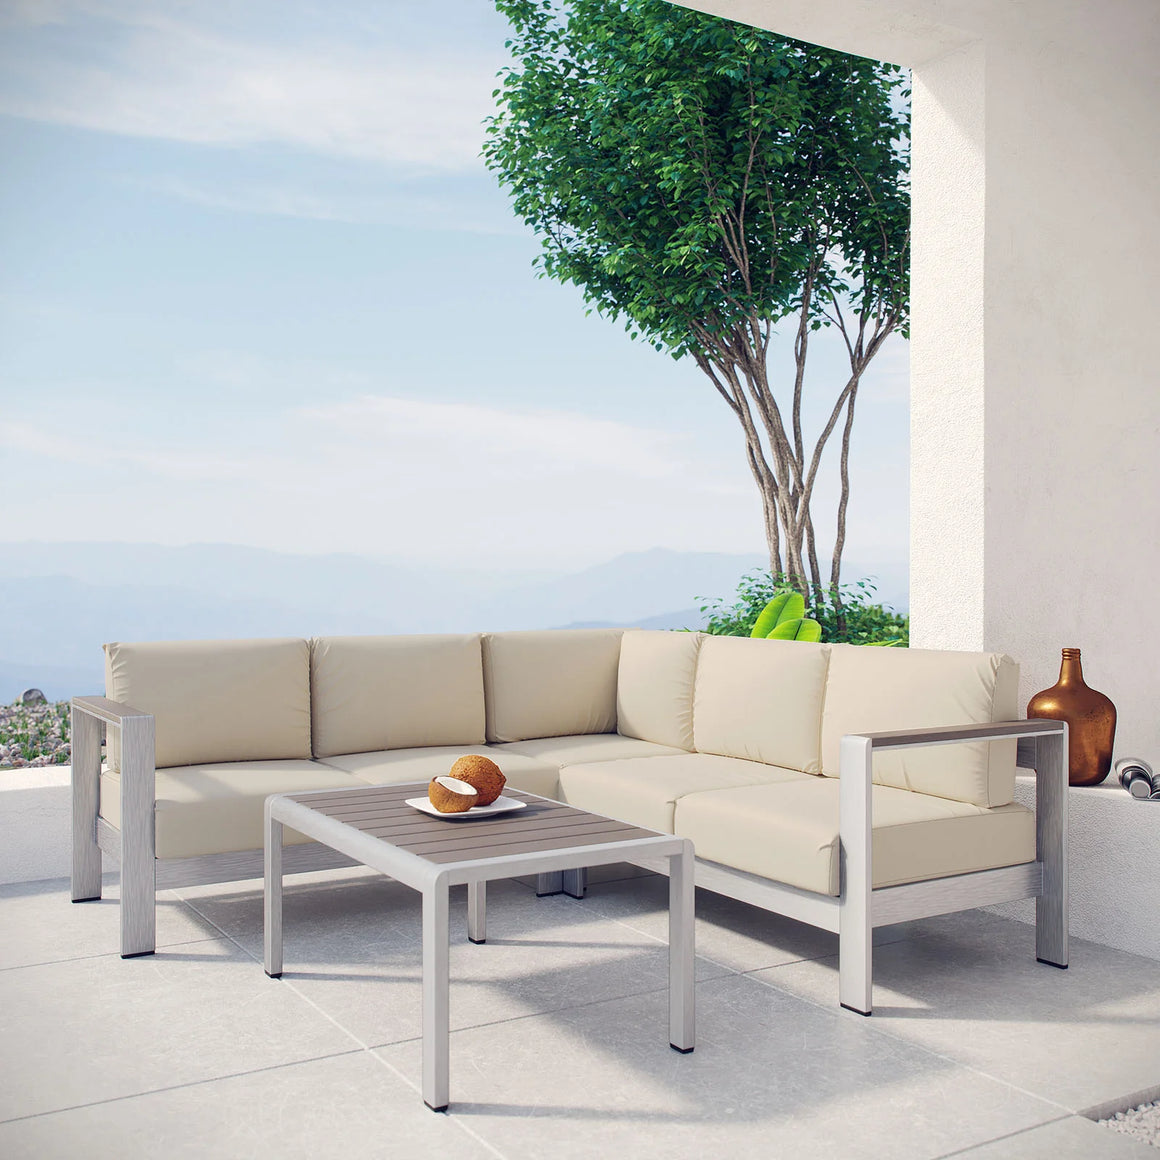 Shore 4 Piece Outdoor Patio Aluminum Sectional Sofa Set in Beige @taylorraydesign